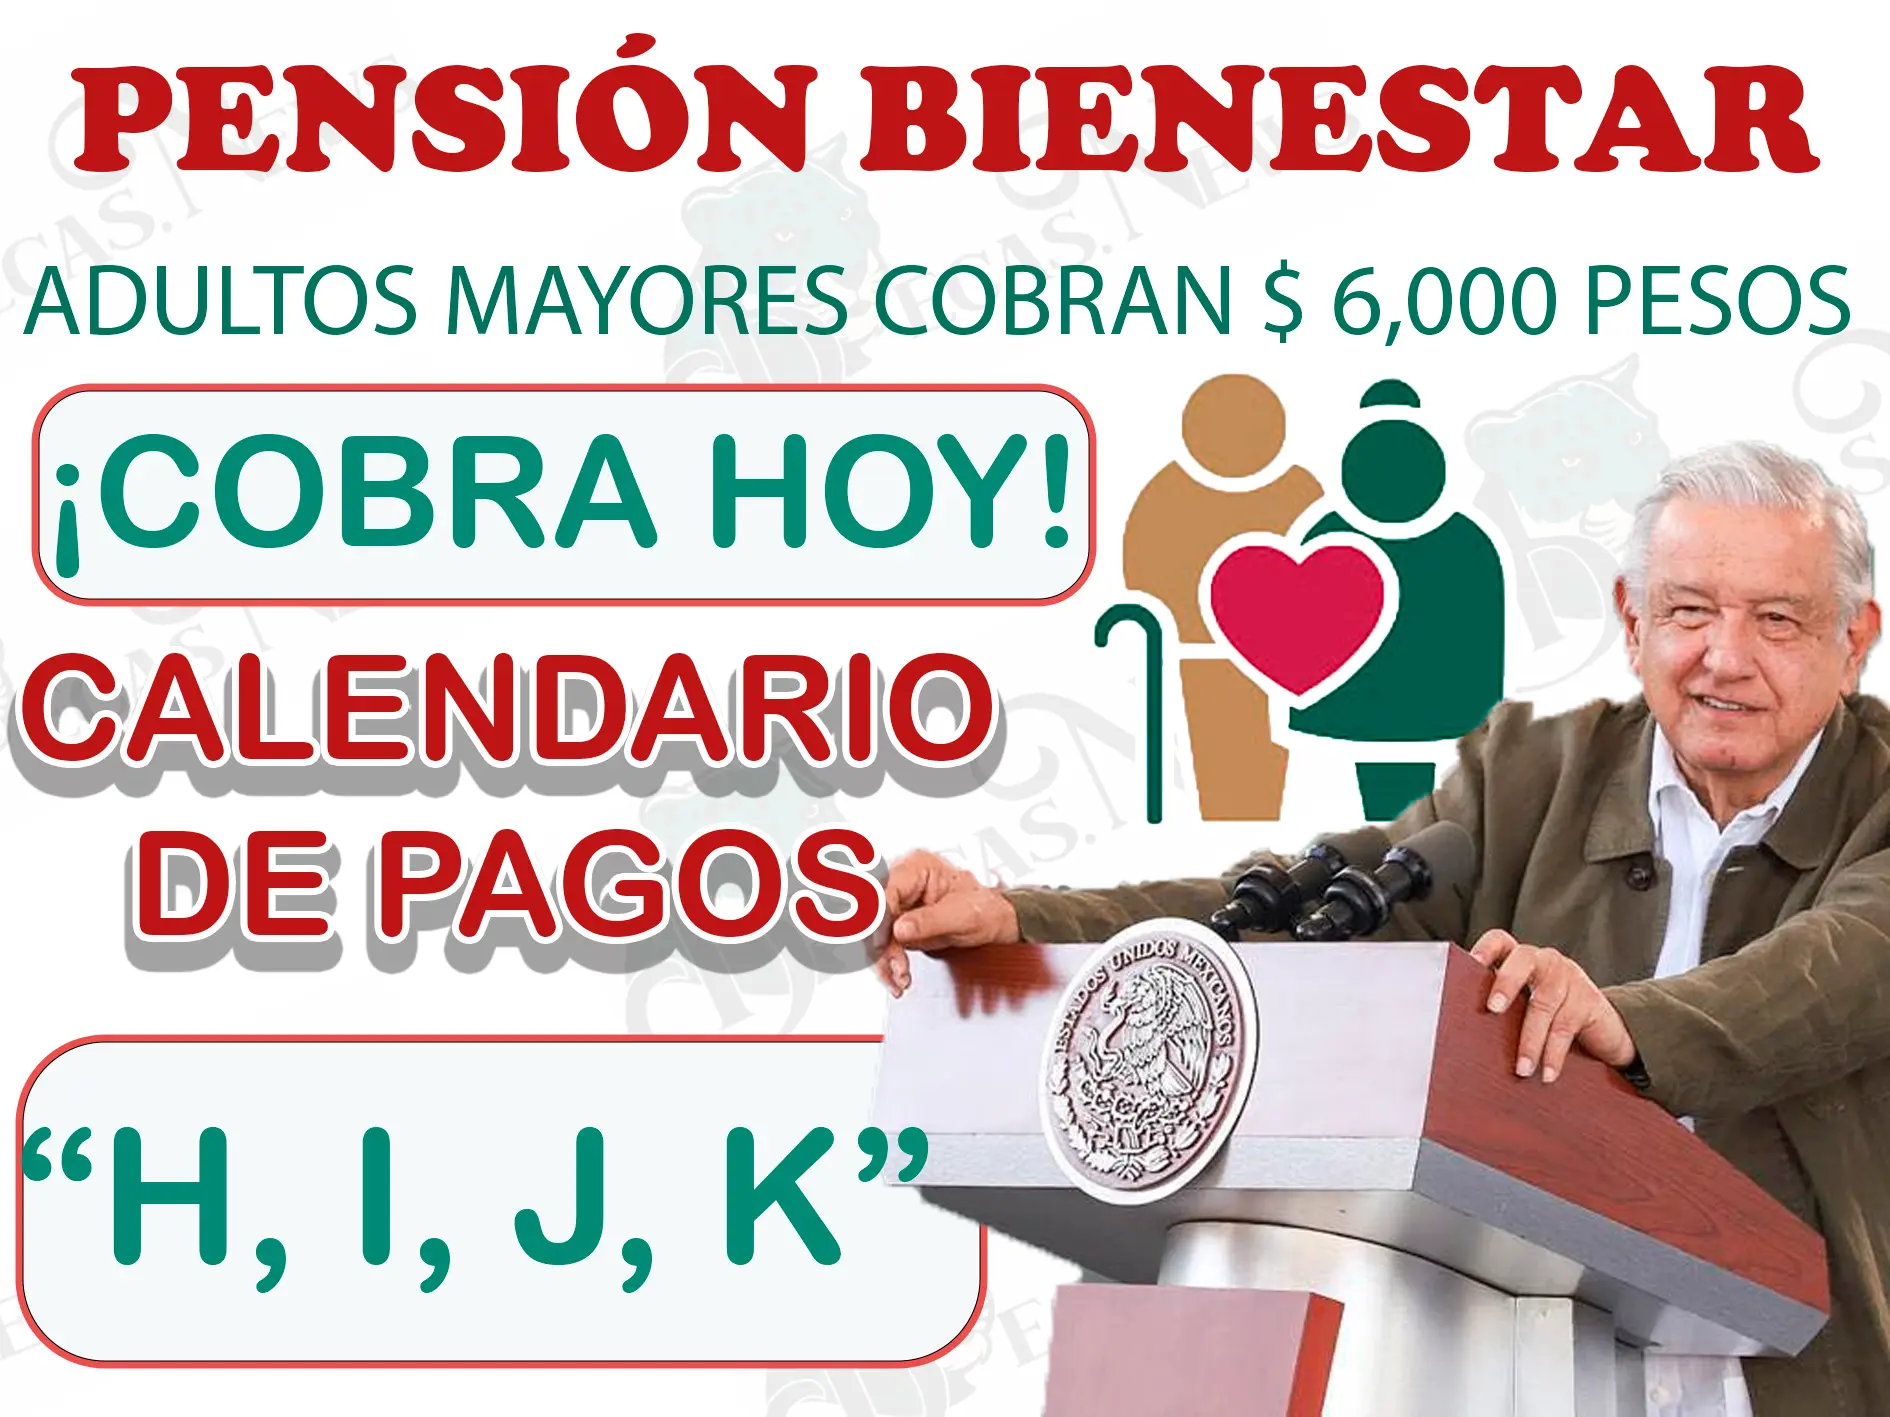 Adultos mayores que cobran $ 6,000 pesos el día de hoy: Pensión Bienestar